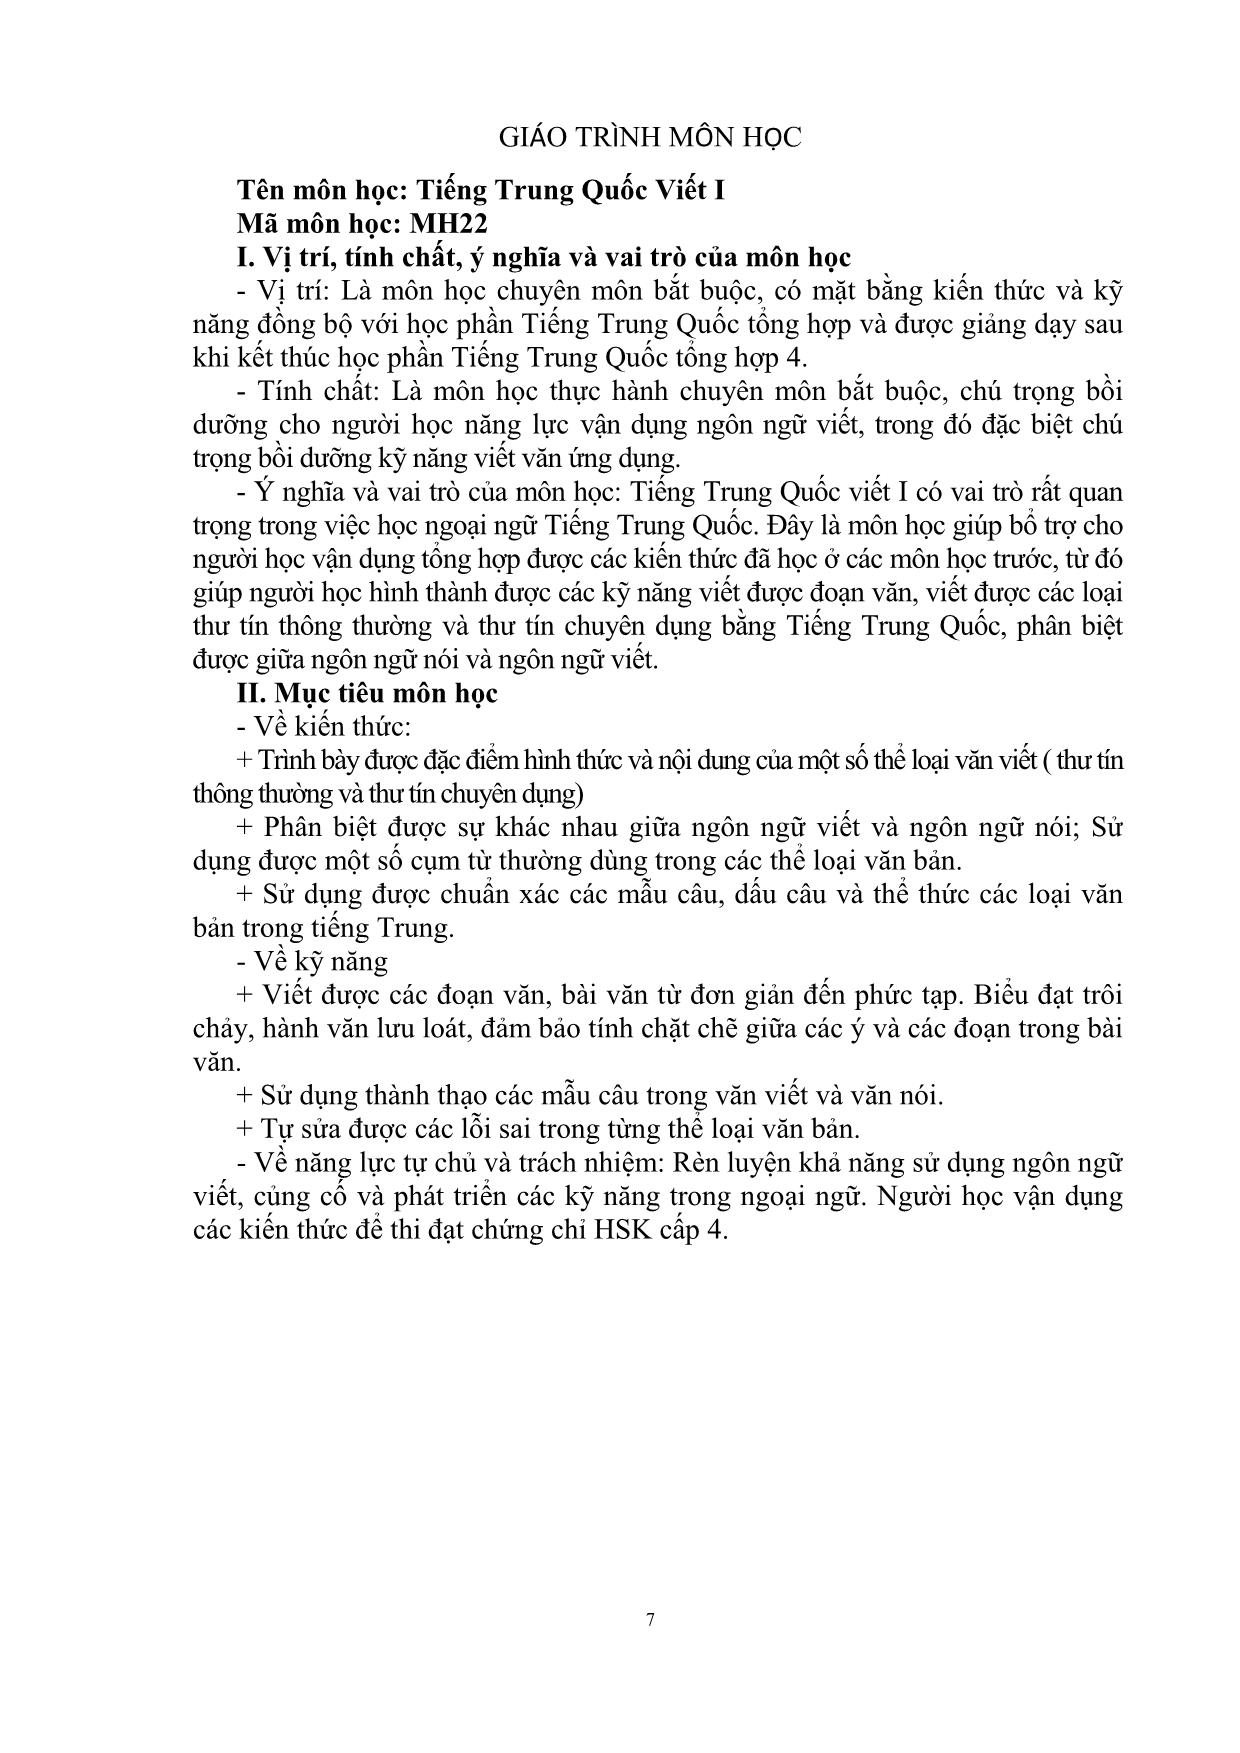 Giáo trình Tiếng Trung Quốc viết I trang 8